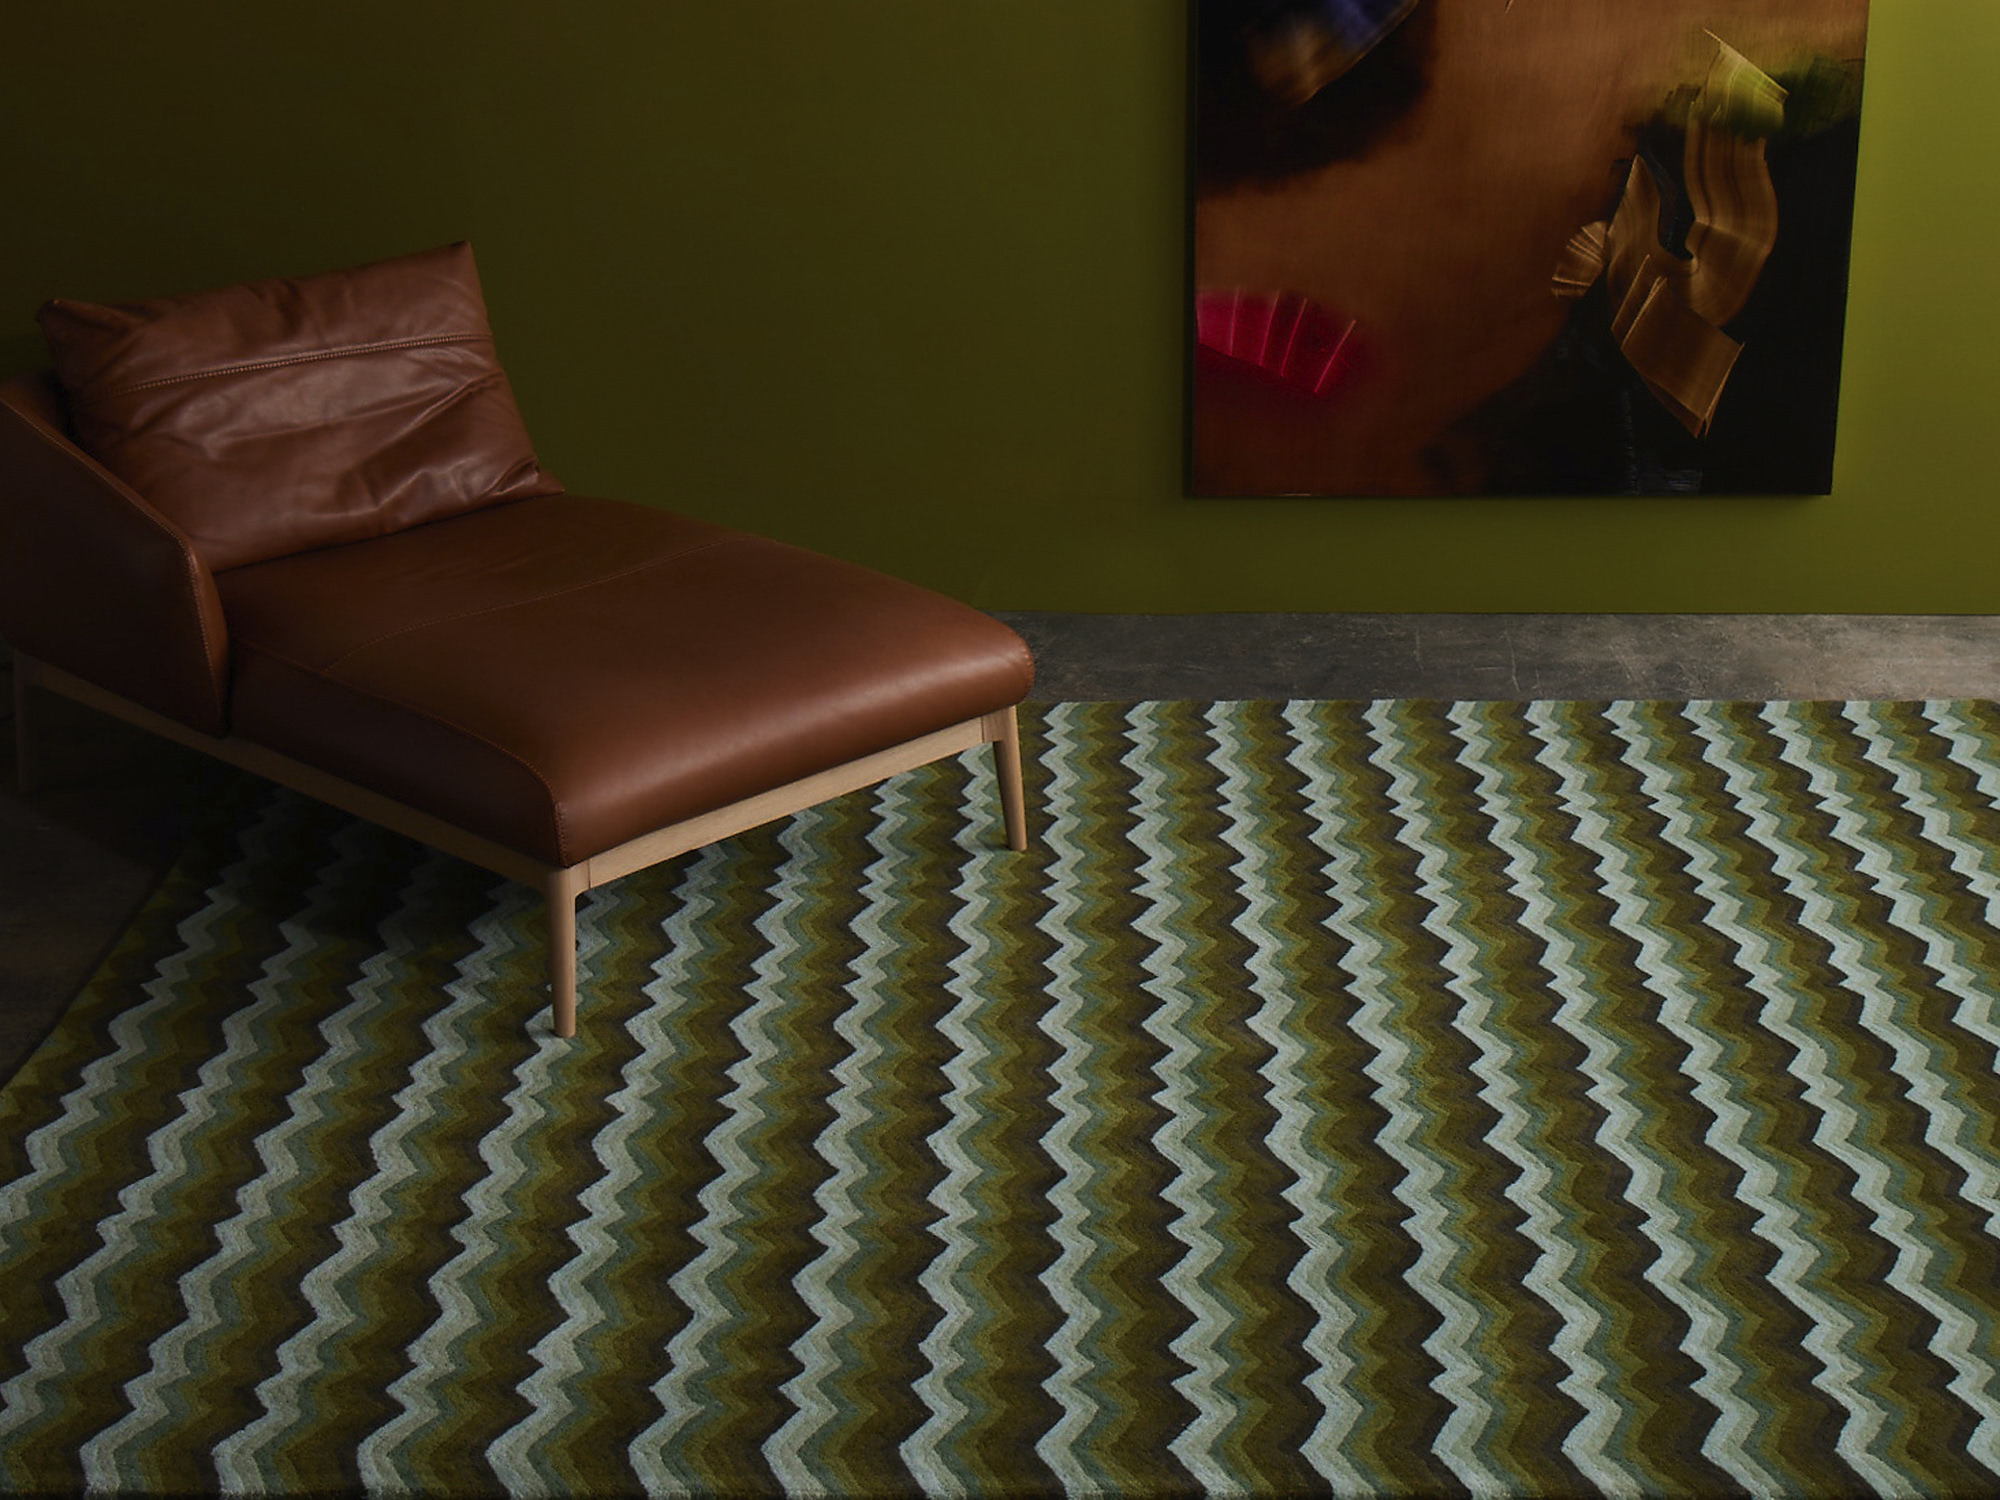 A green area rug called Buzz Emerald